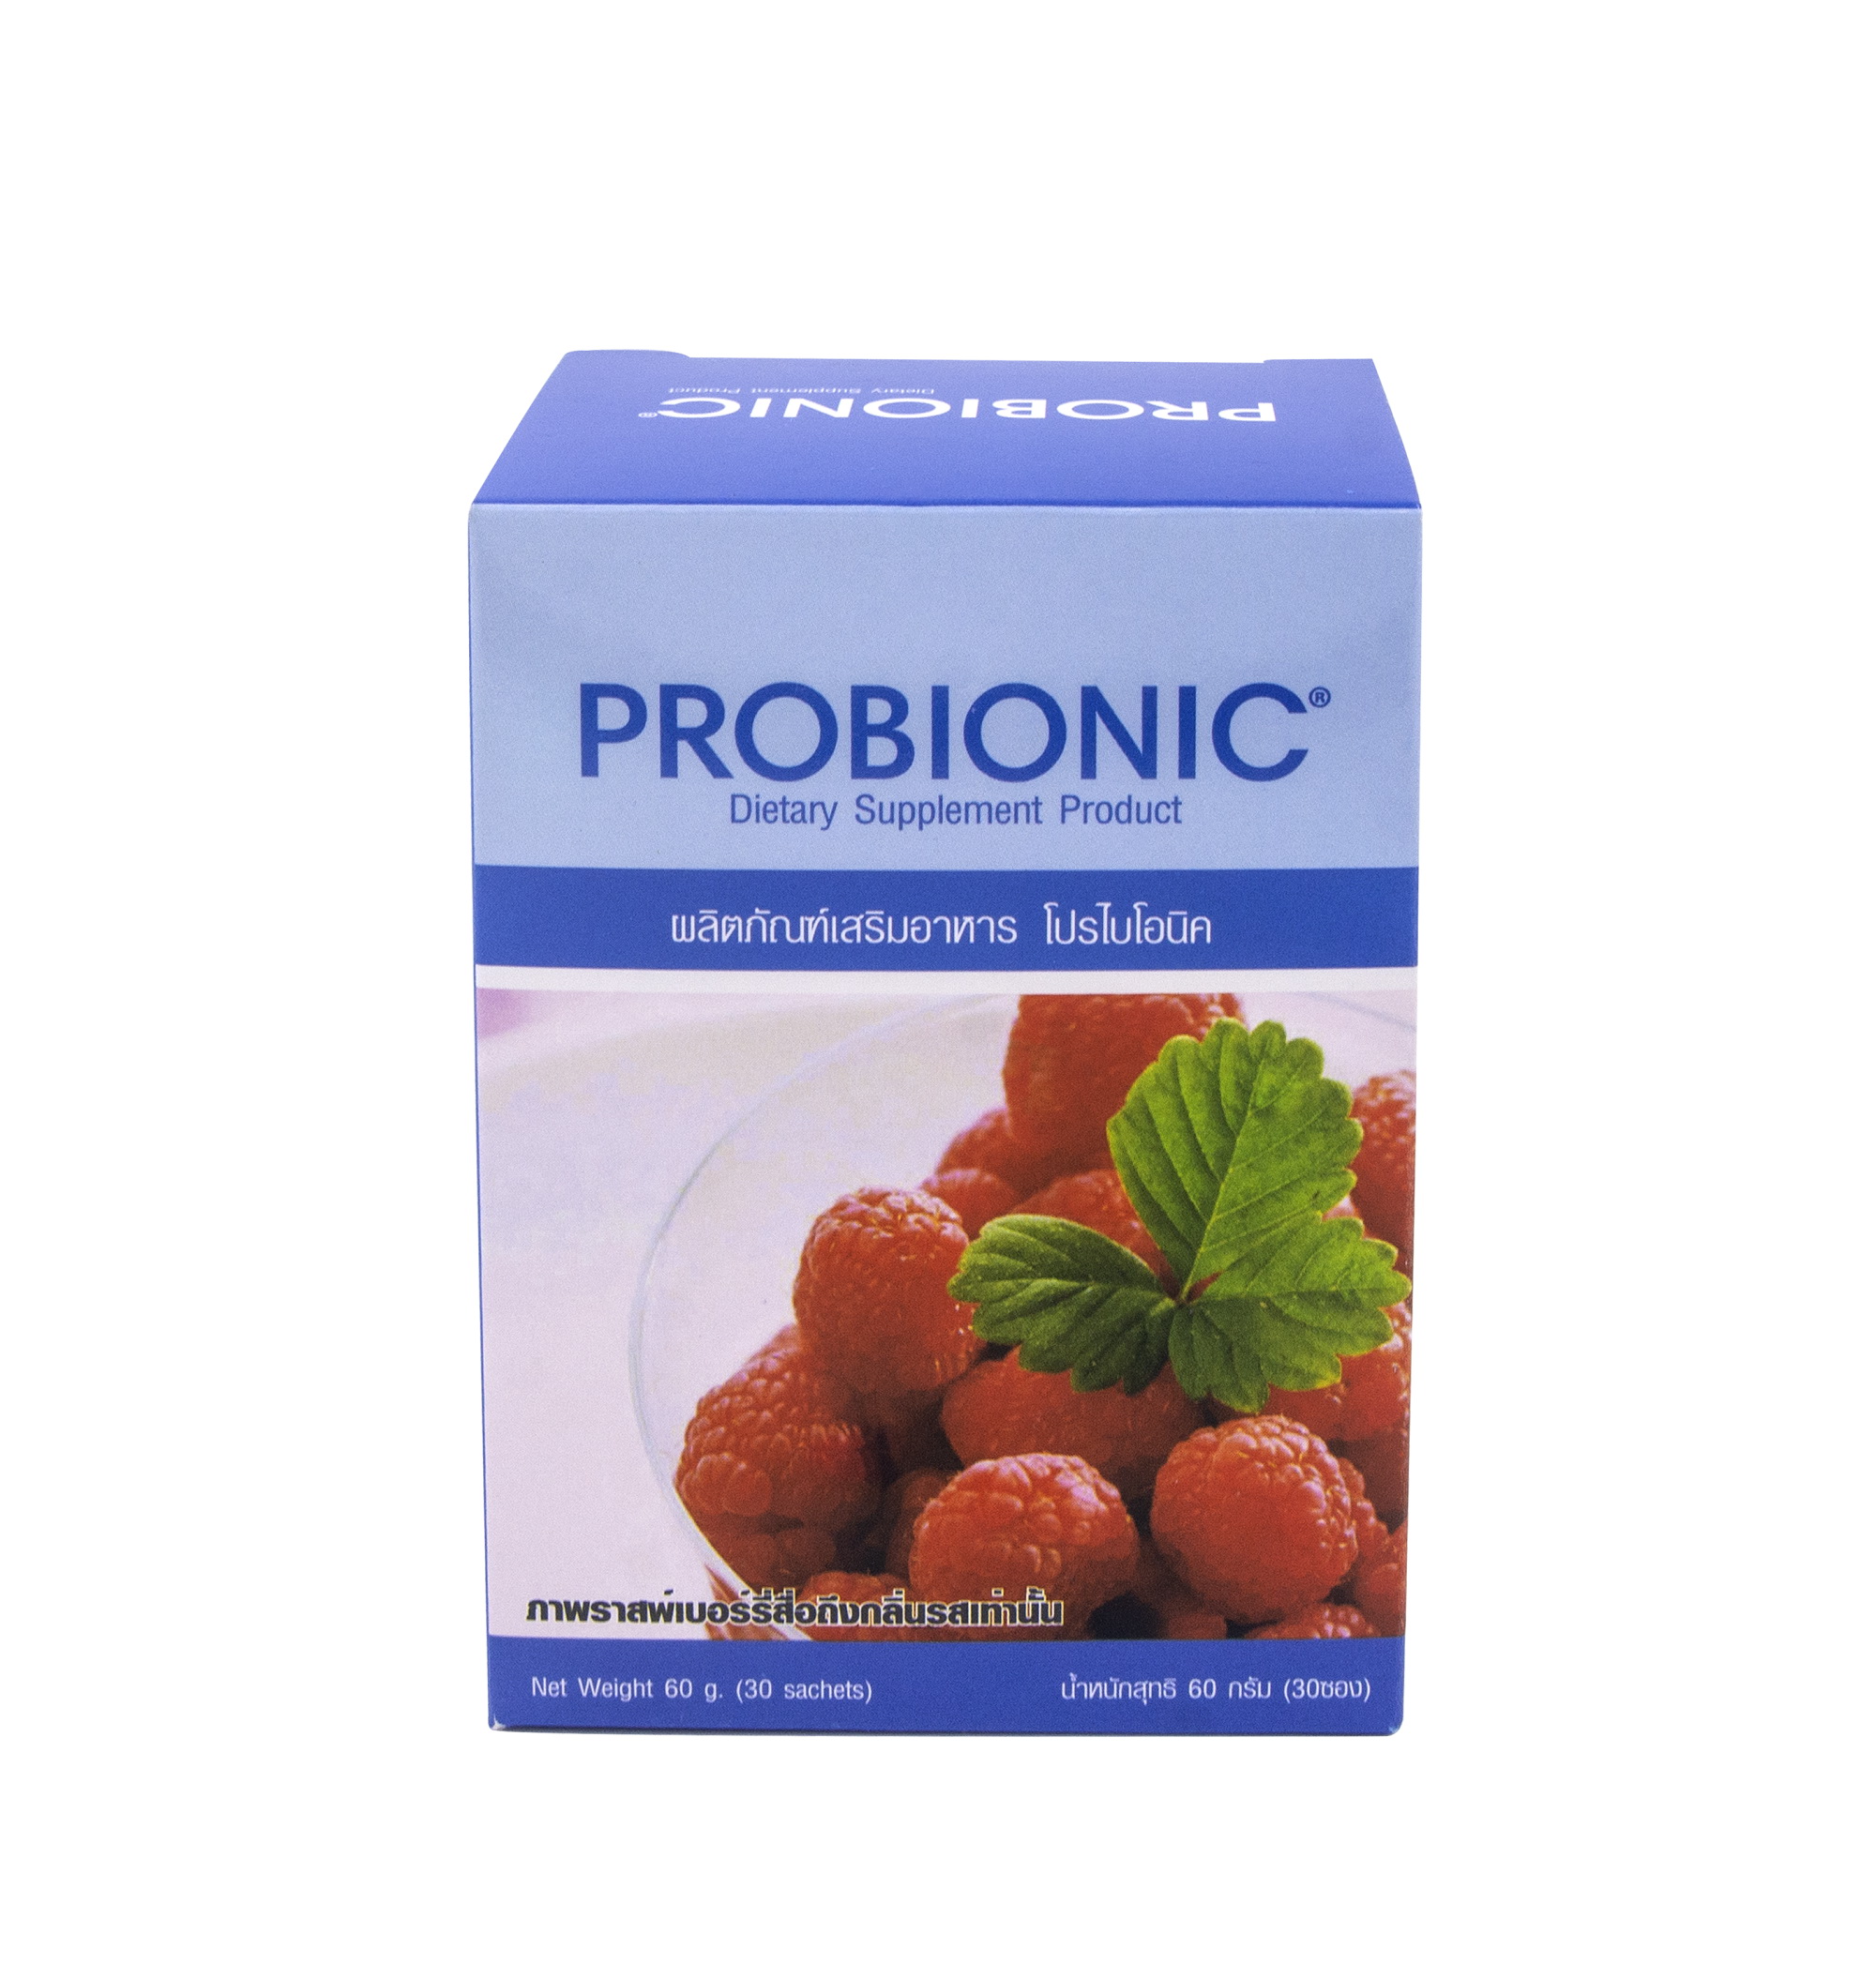 ผลิตภัณฑ์ 'โปรไบโอนิค (Probionic) เพื่อสร้างสมดุลให้ระบบทางเดินอาหาร